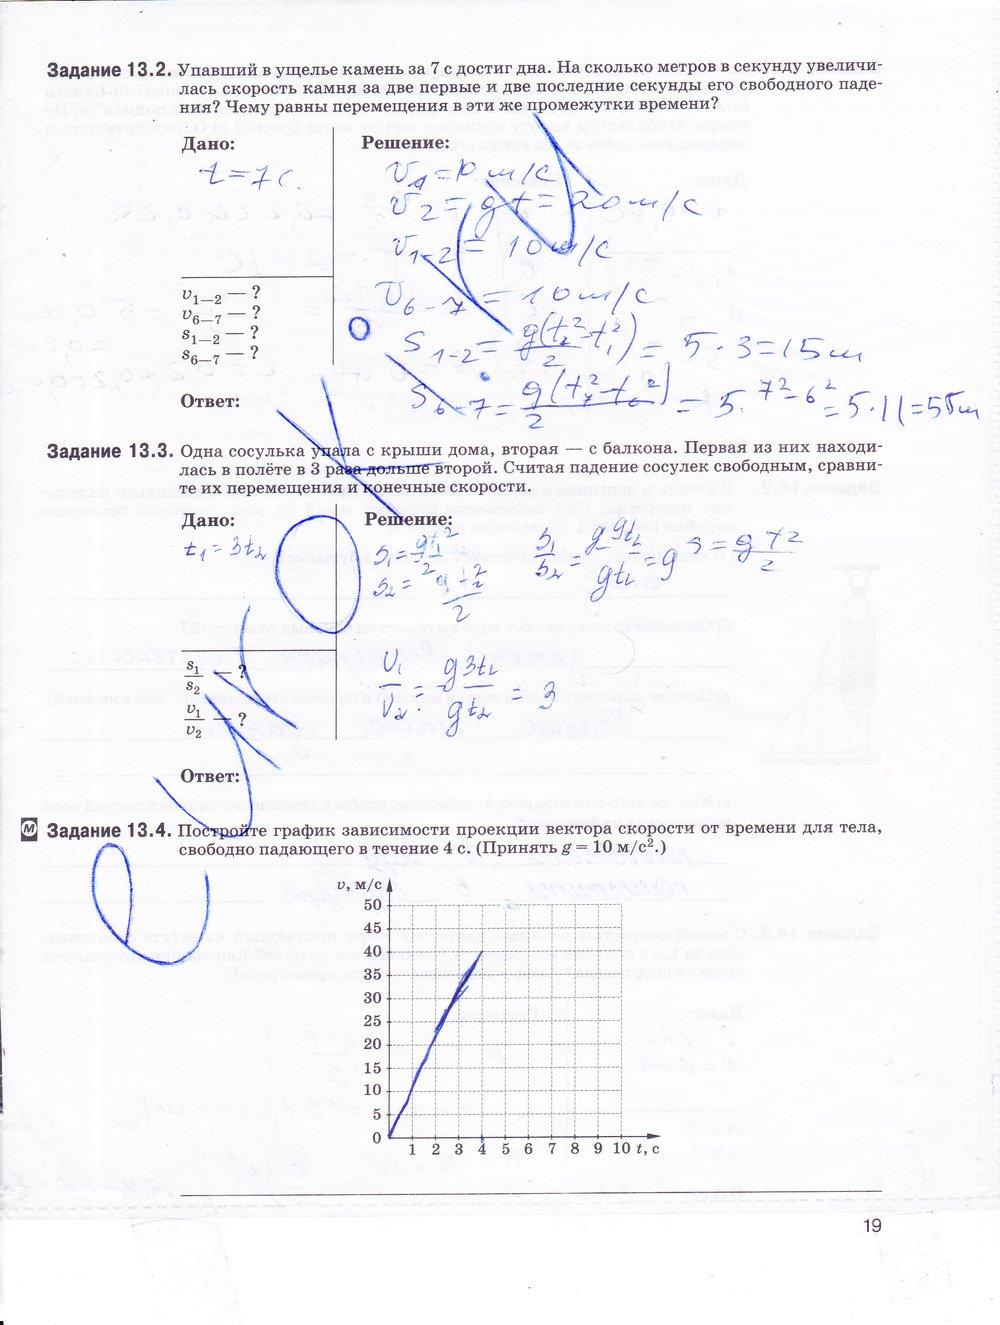 гдз 9 класс рабочая тетрадь страница 19 физика Гутник, Власова